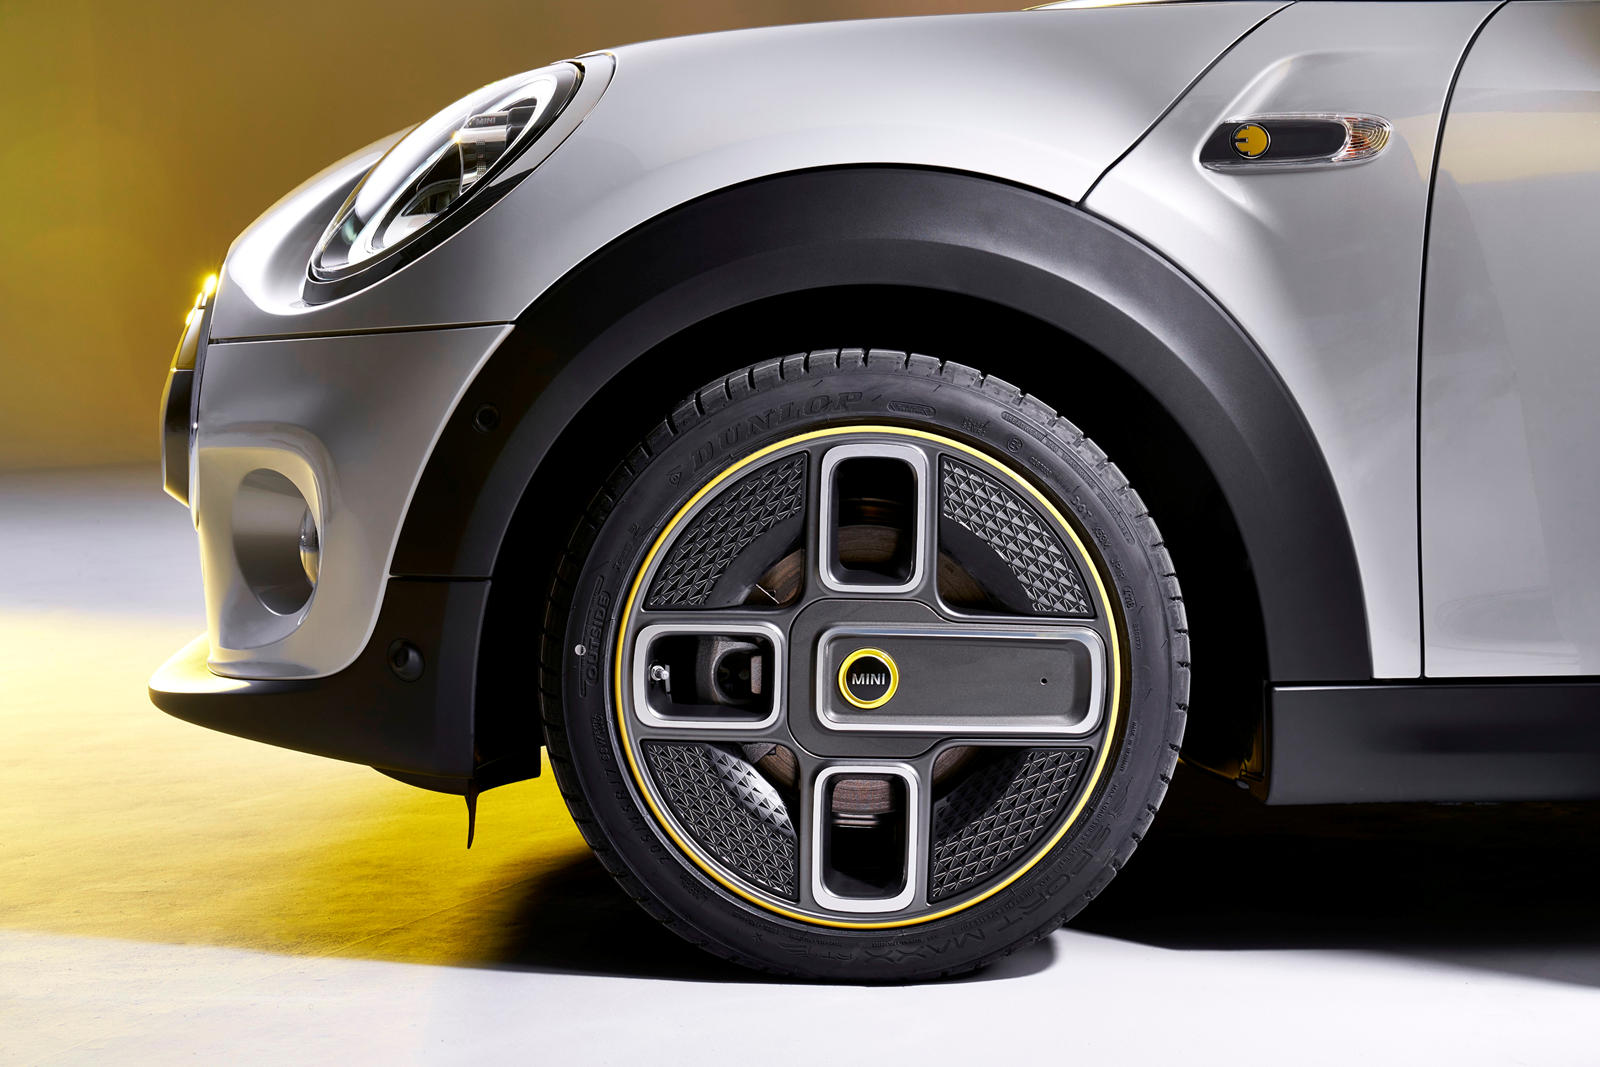 Мы бы поняли, если бы потребители негативно отреагировали на странно стилизованные диски, но на самом деле это проблема с названием колес, которая застала Mini врасплох. По стечению обстоятельств Mini называет эти 17-дюймовые колеса «Corona Spoke» - 